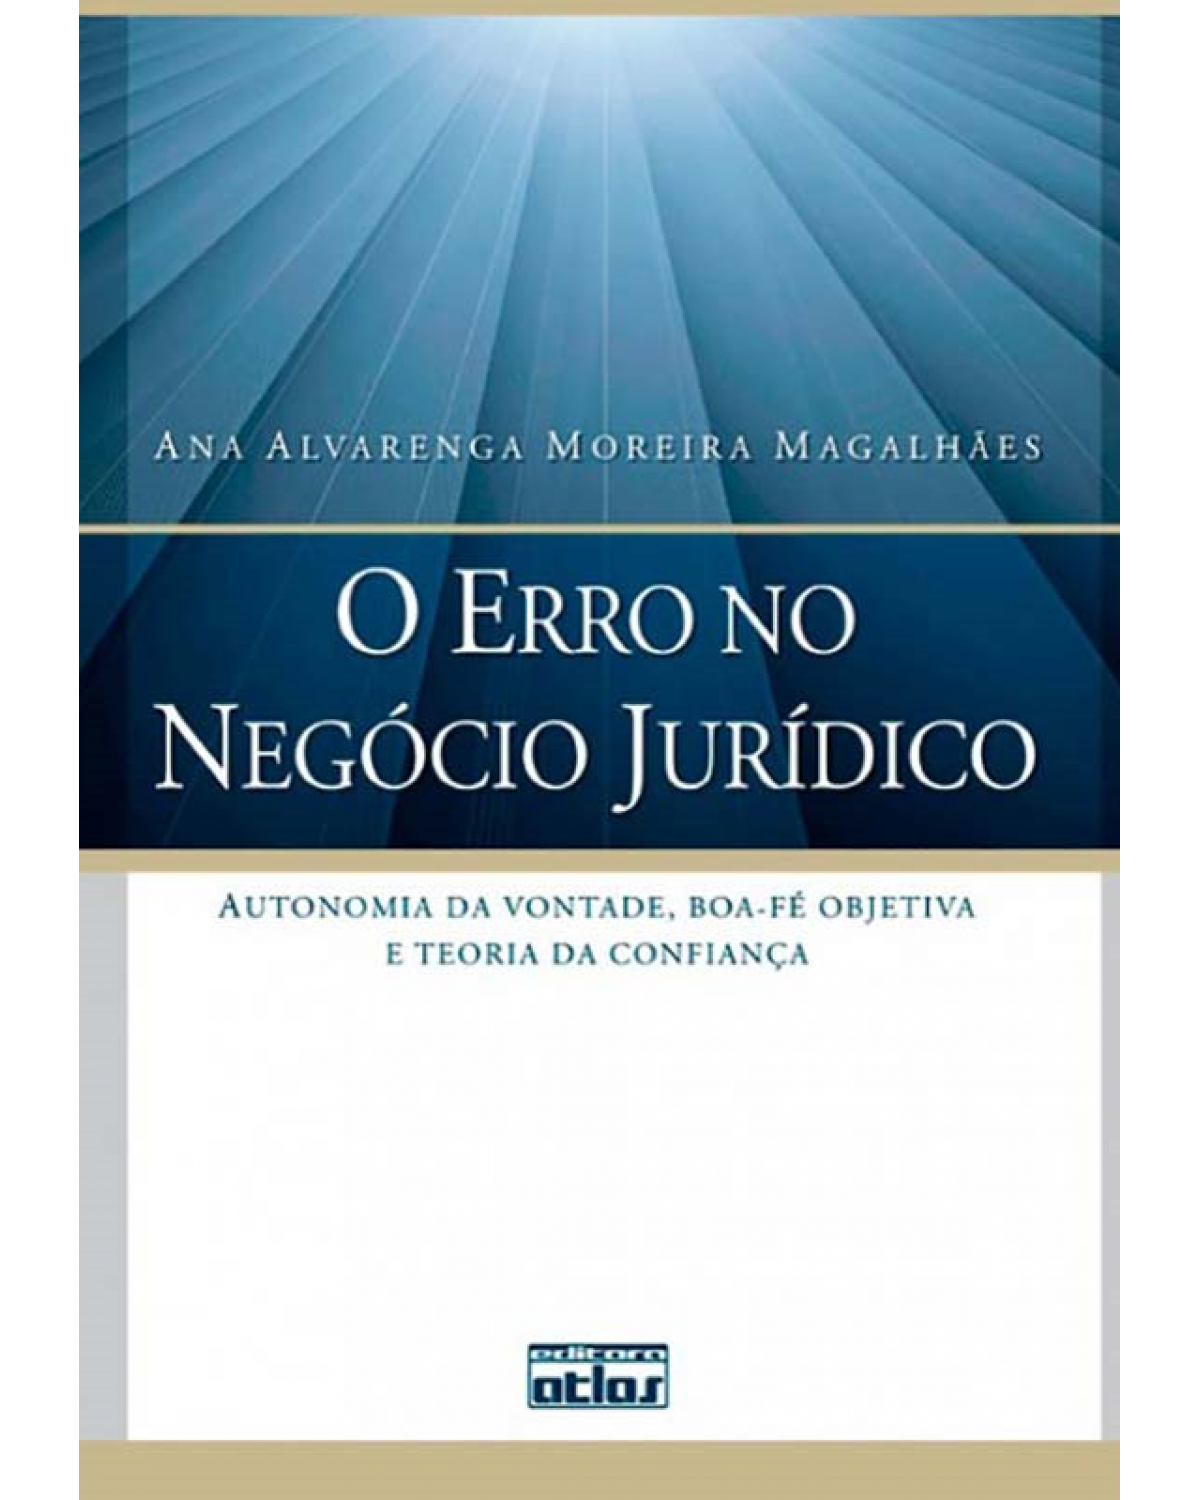 O erro no negócio jurídico - Autonomia da vontade, boa-fé objetiva e teoria da confiança - 1ª Edição | 2011